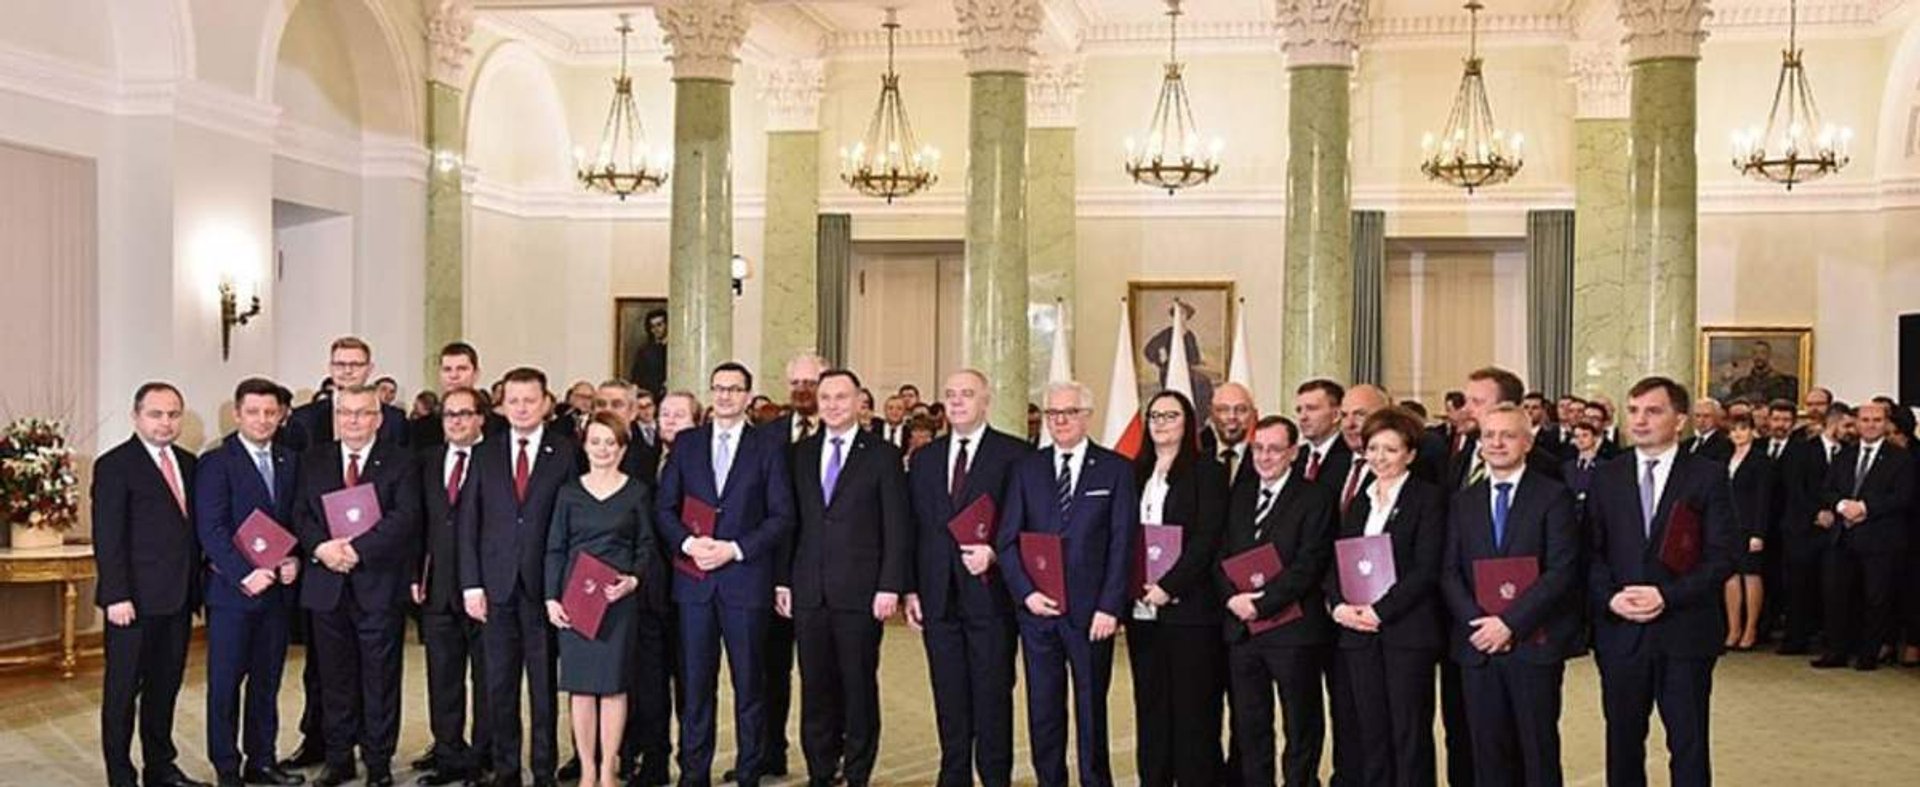 Uroczystość powołania Rady Ministrów z udziałem Marszałek Sejmu